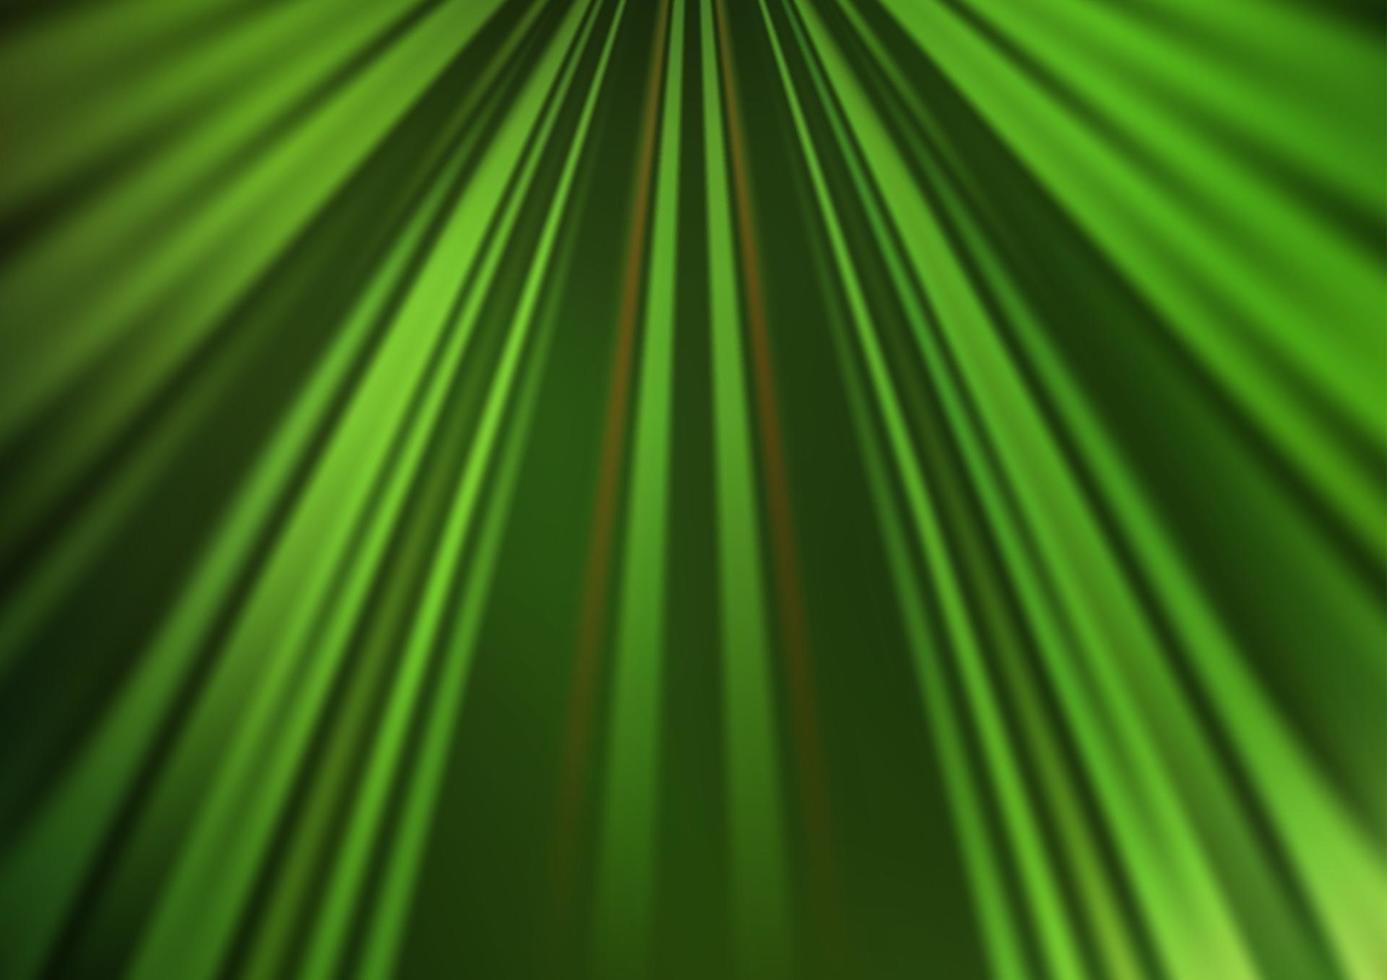 patrón de vector verde claro con líneas estrechas.